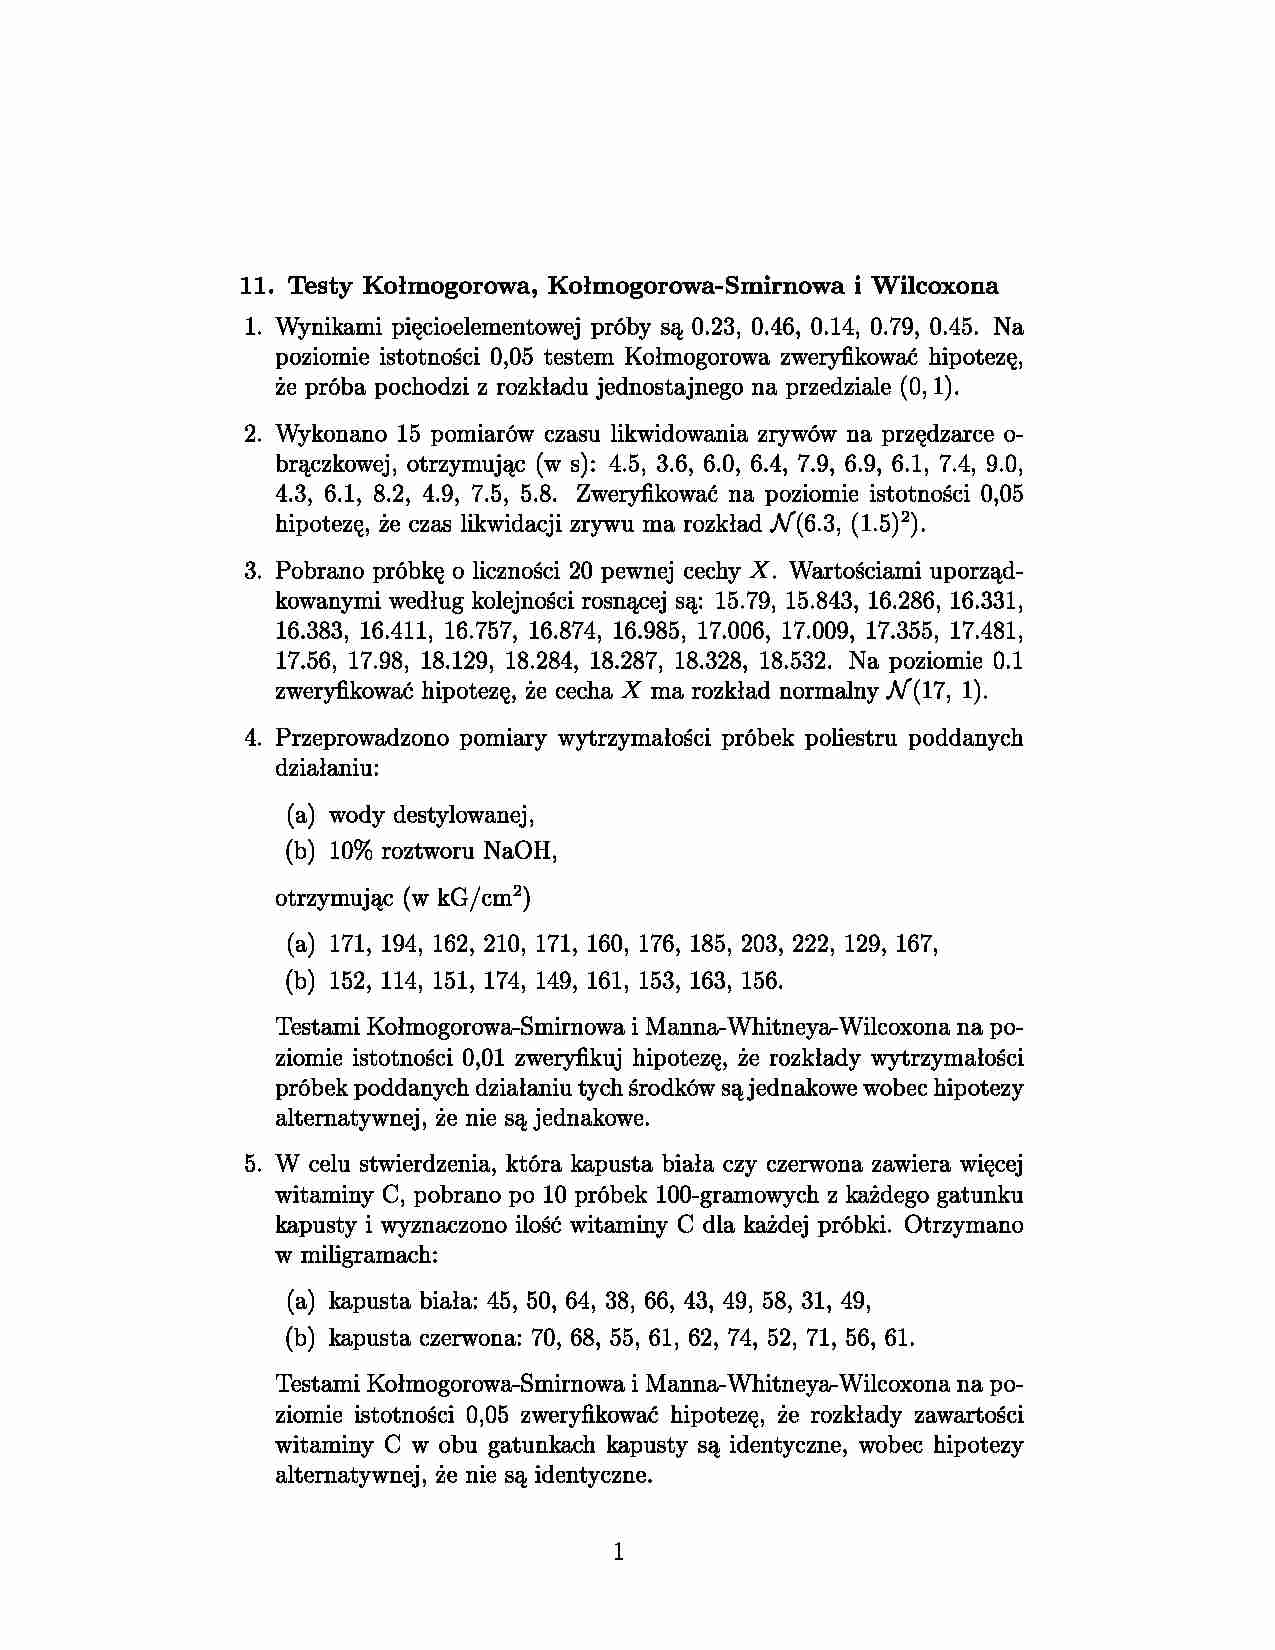 Testy Kołmogorowa, Kołmogorowa-Smirnowa i Wilcoxona - strona 1